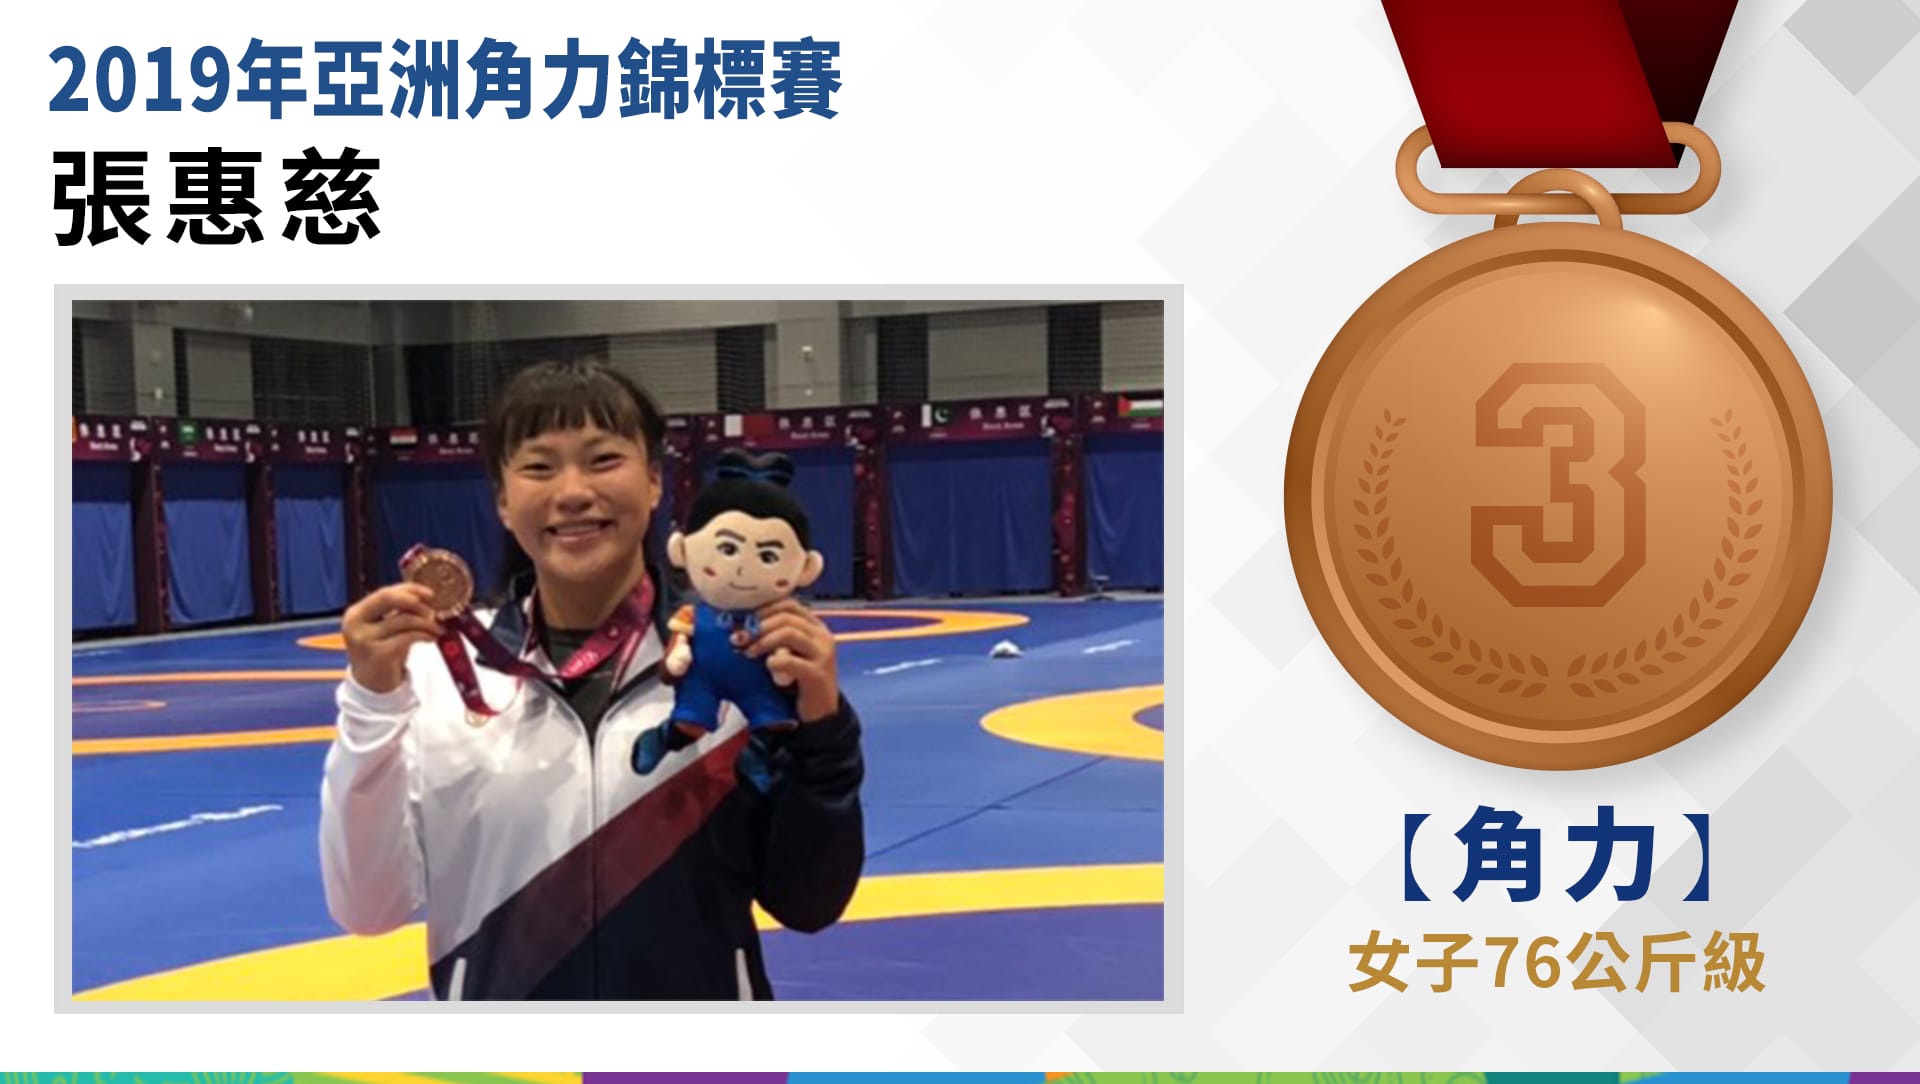 張惠慈 - 銅牌 ( 女子76公斤級)